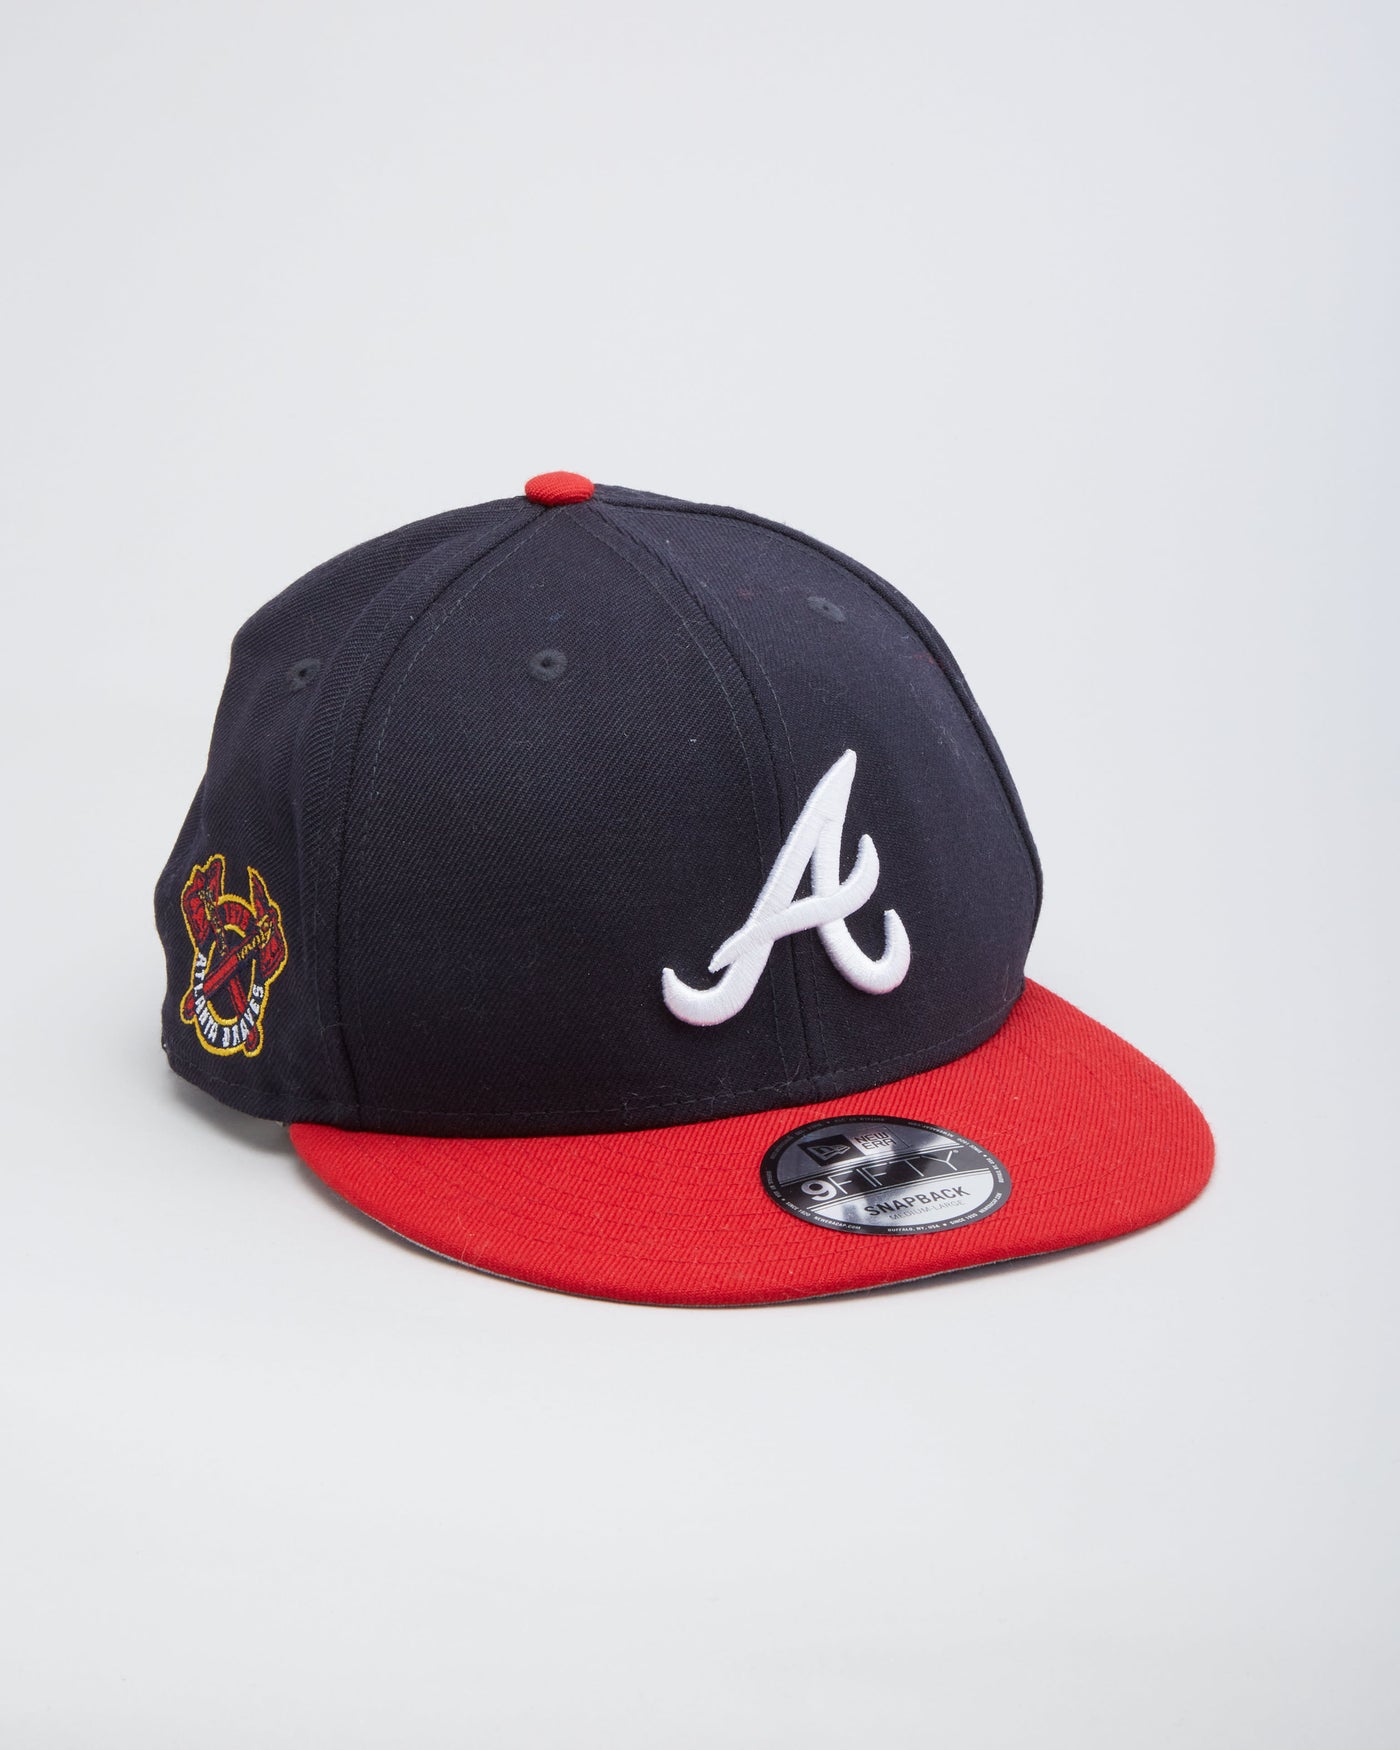 New Era MLB Atlanta Braves Navy / Red Snapback Hat - M / L